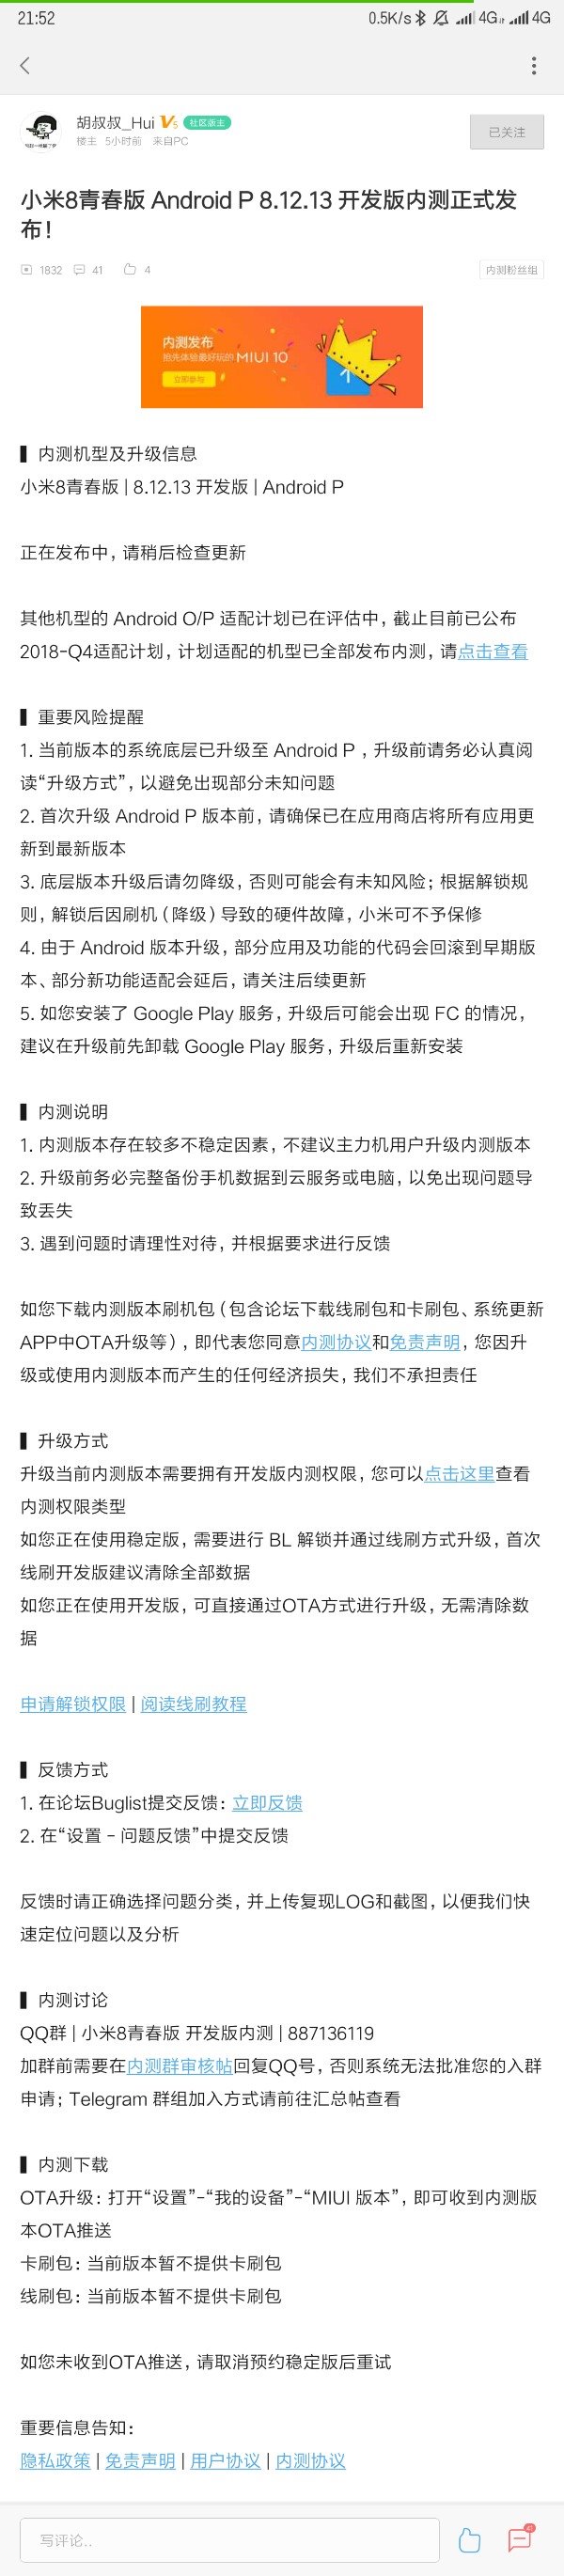 手机杀毒软件，小米为小米 8 青春版公布 Android P 8.12.13 开发版内测更新